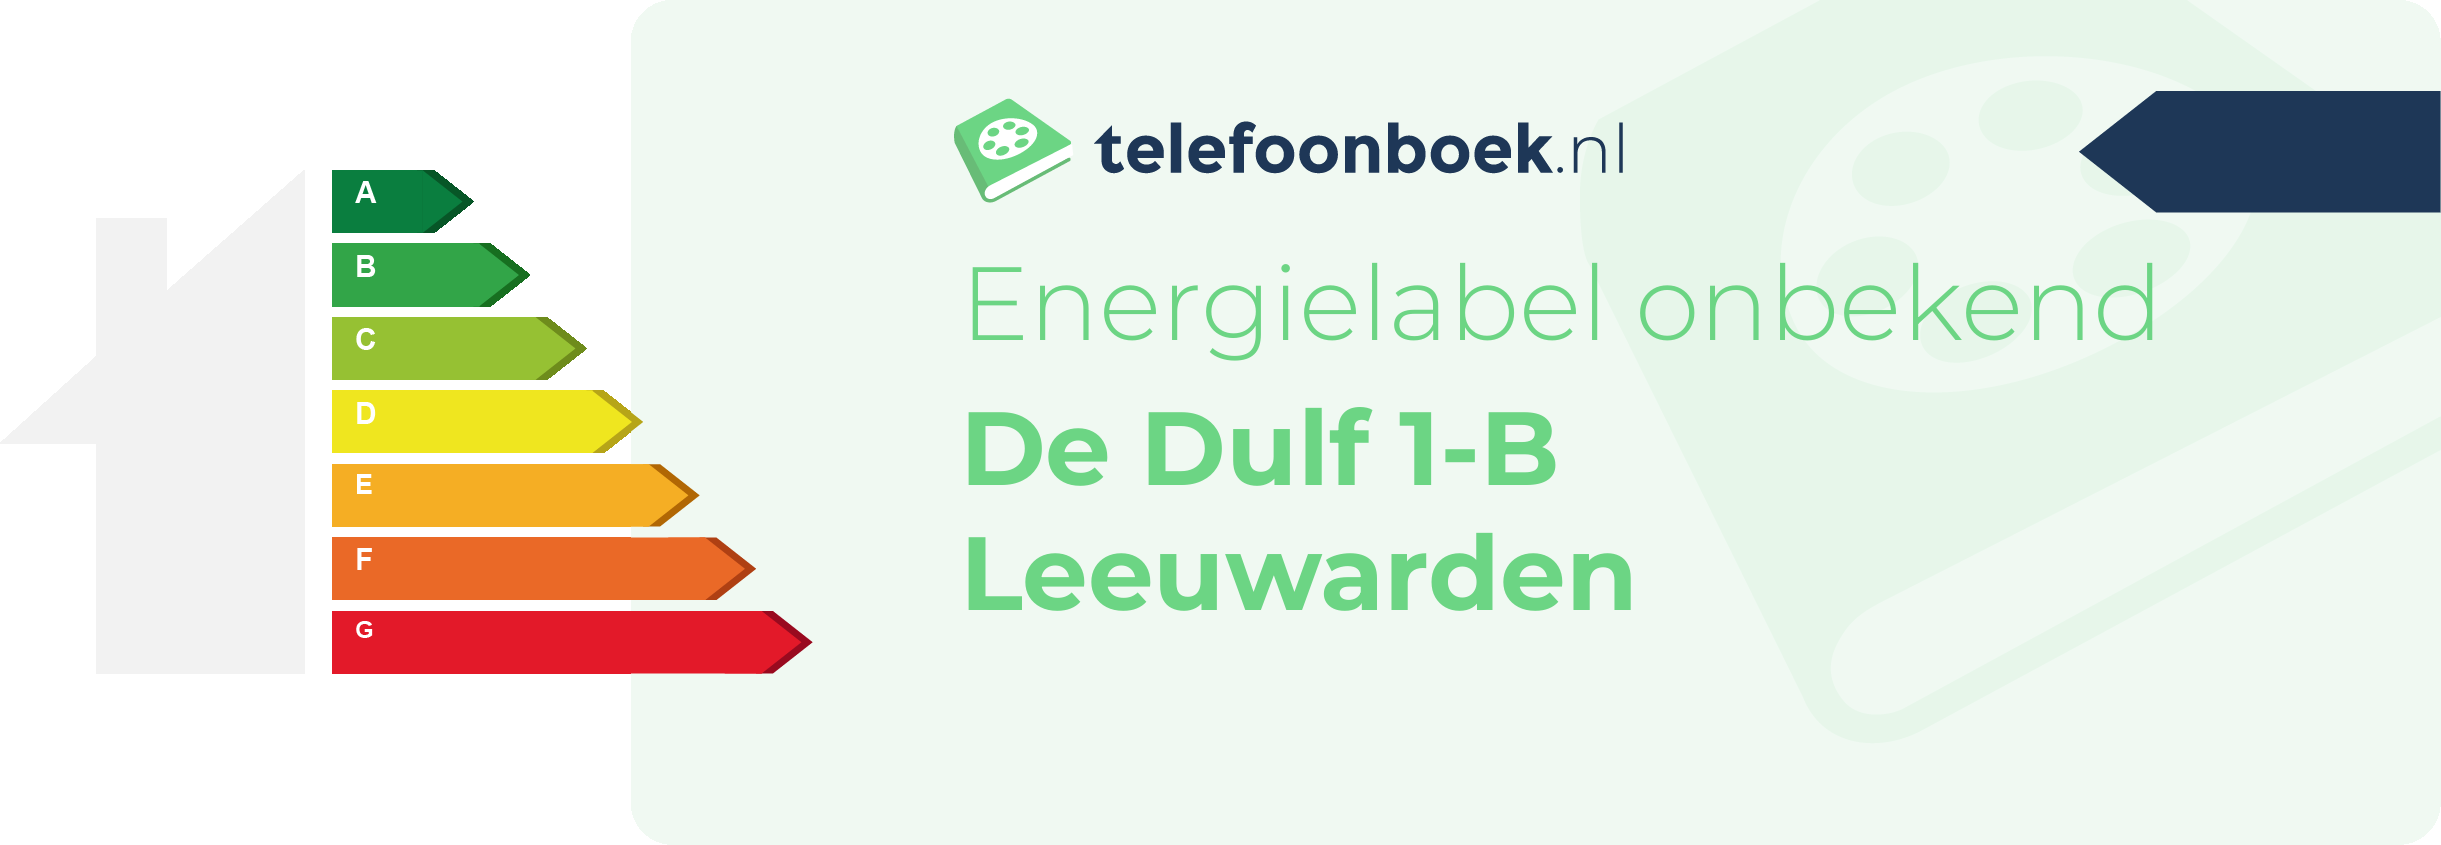 Energielabel De Dulf 1-B Leeuwarden